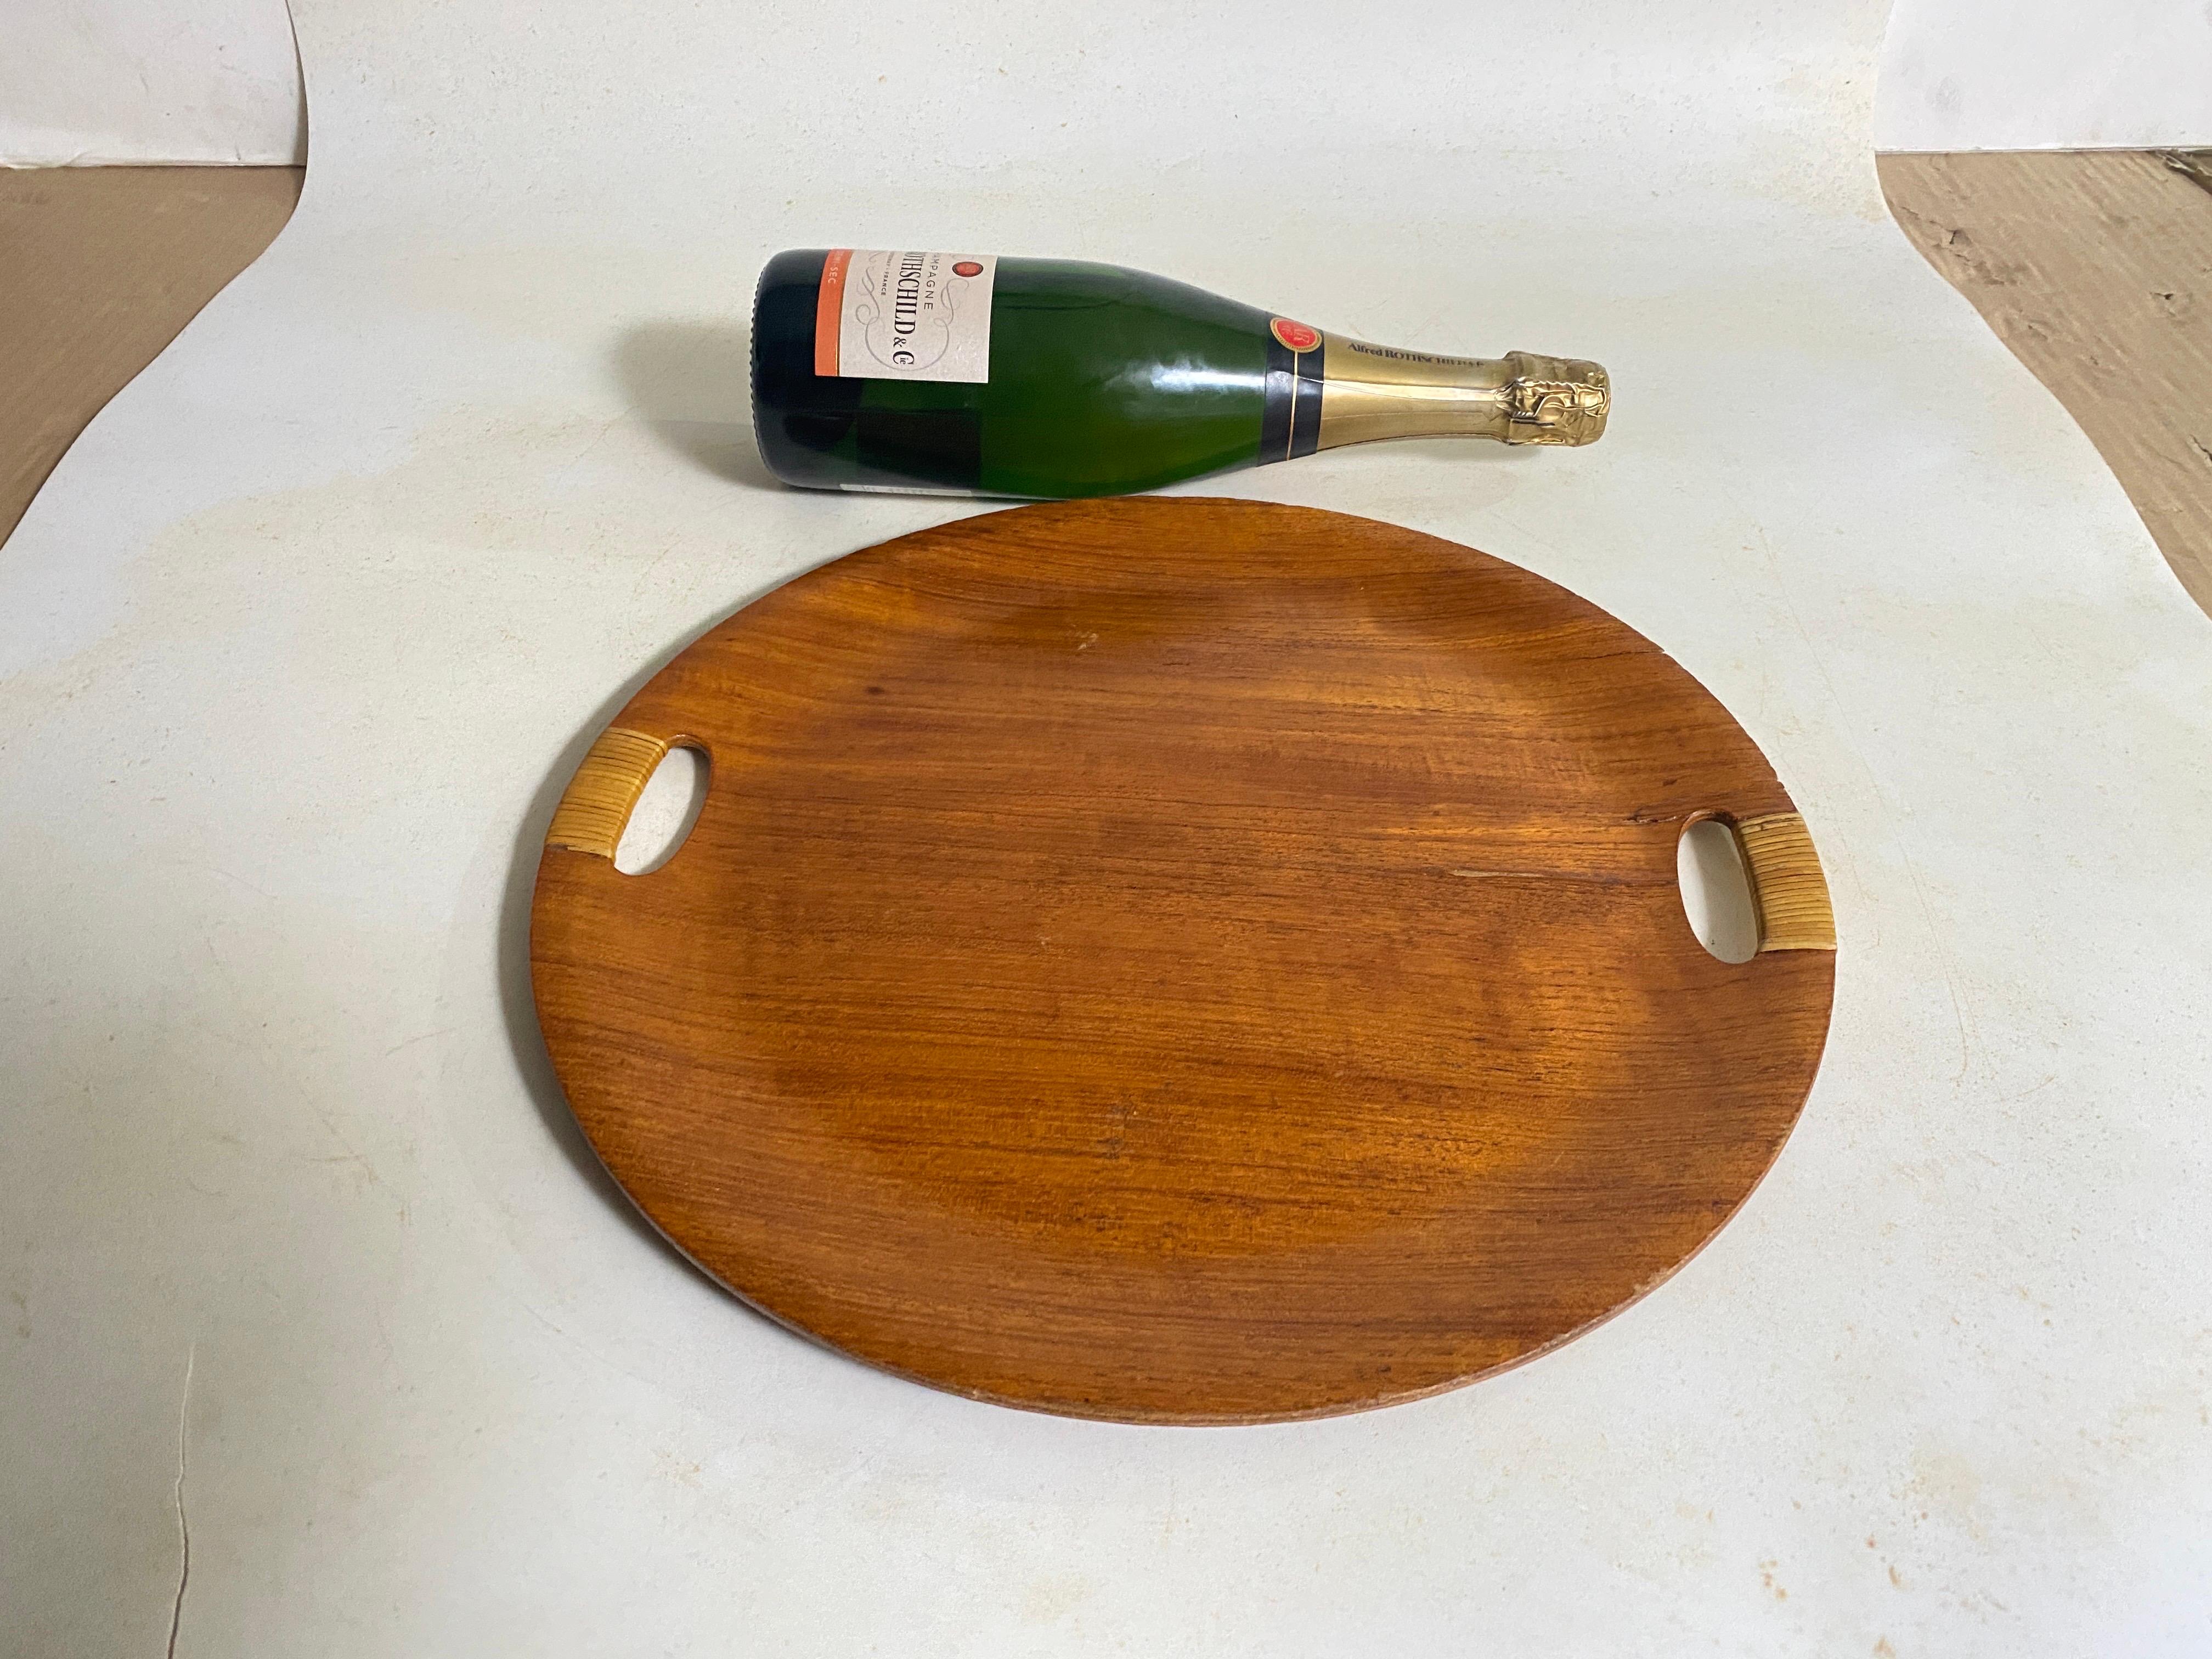 Dieses Tablett oder diese Platte stammt aus Dänemark. Es wurde in den 1960er Jahren hergestellt.
Braun Farbe.
Runde Form.
Rattan und Holz.
